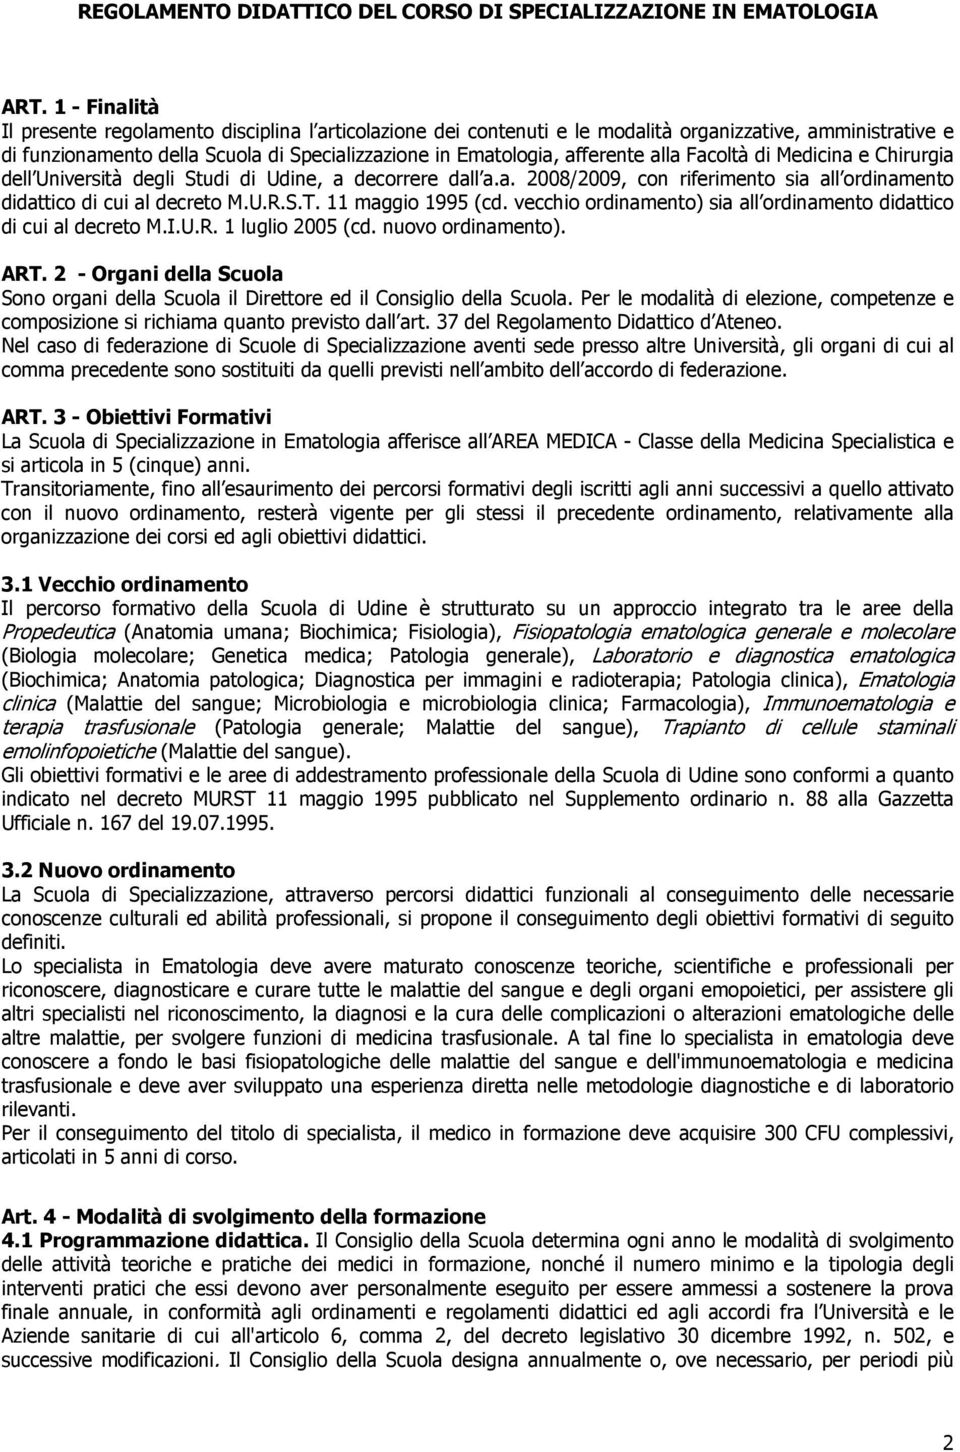 alla Facoltà di Medicina e Chirurgia dell Università degli Studi di Udine, a decorrere dall a.a. 2008/2009, con riferimento sia all ordinamento didattico di cui al decreto M.U.R.S.T.